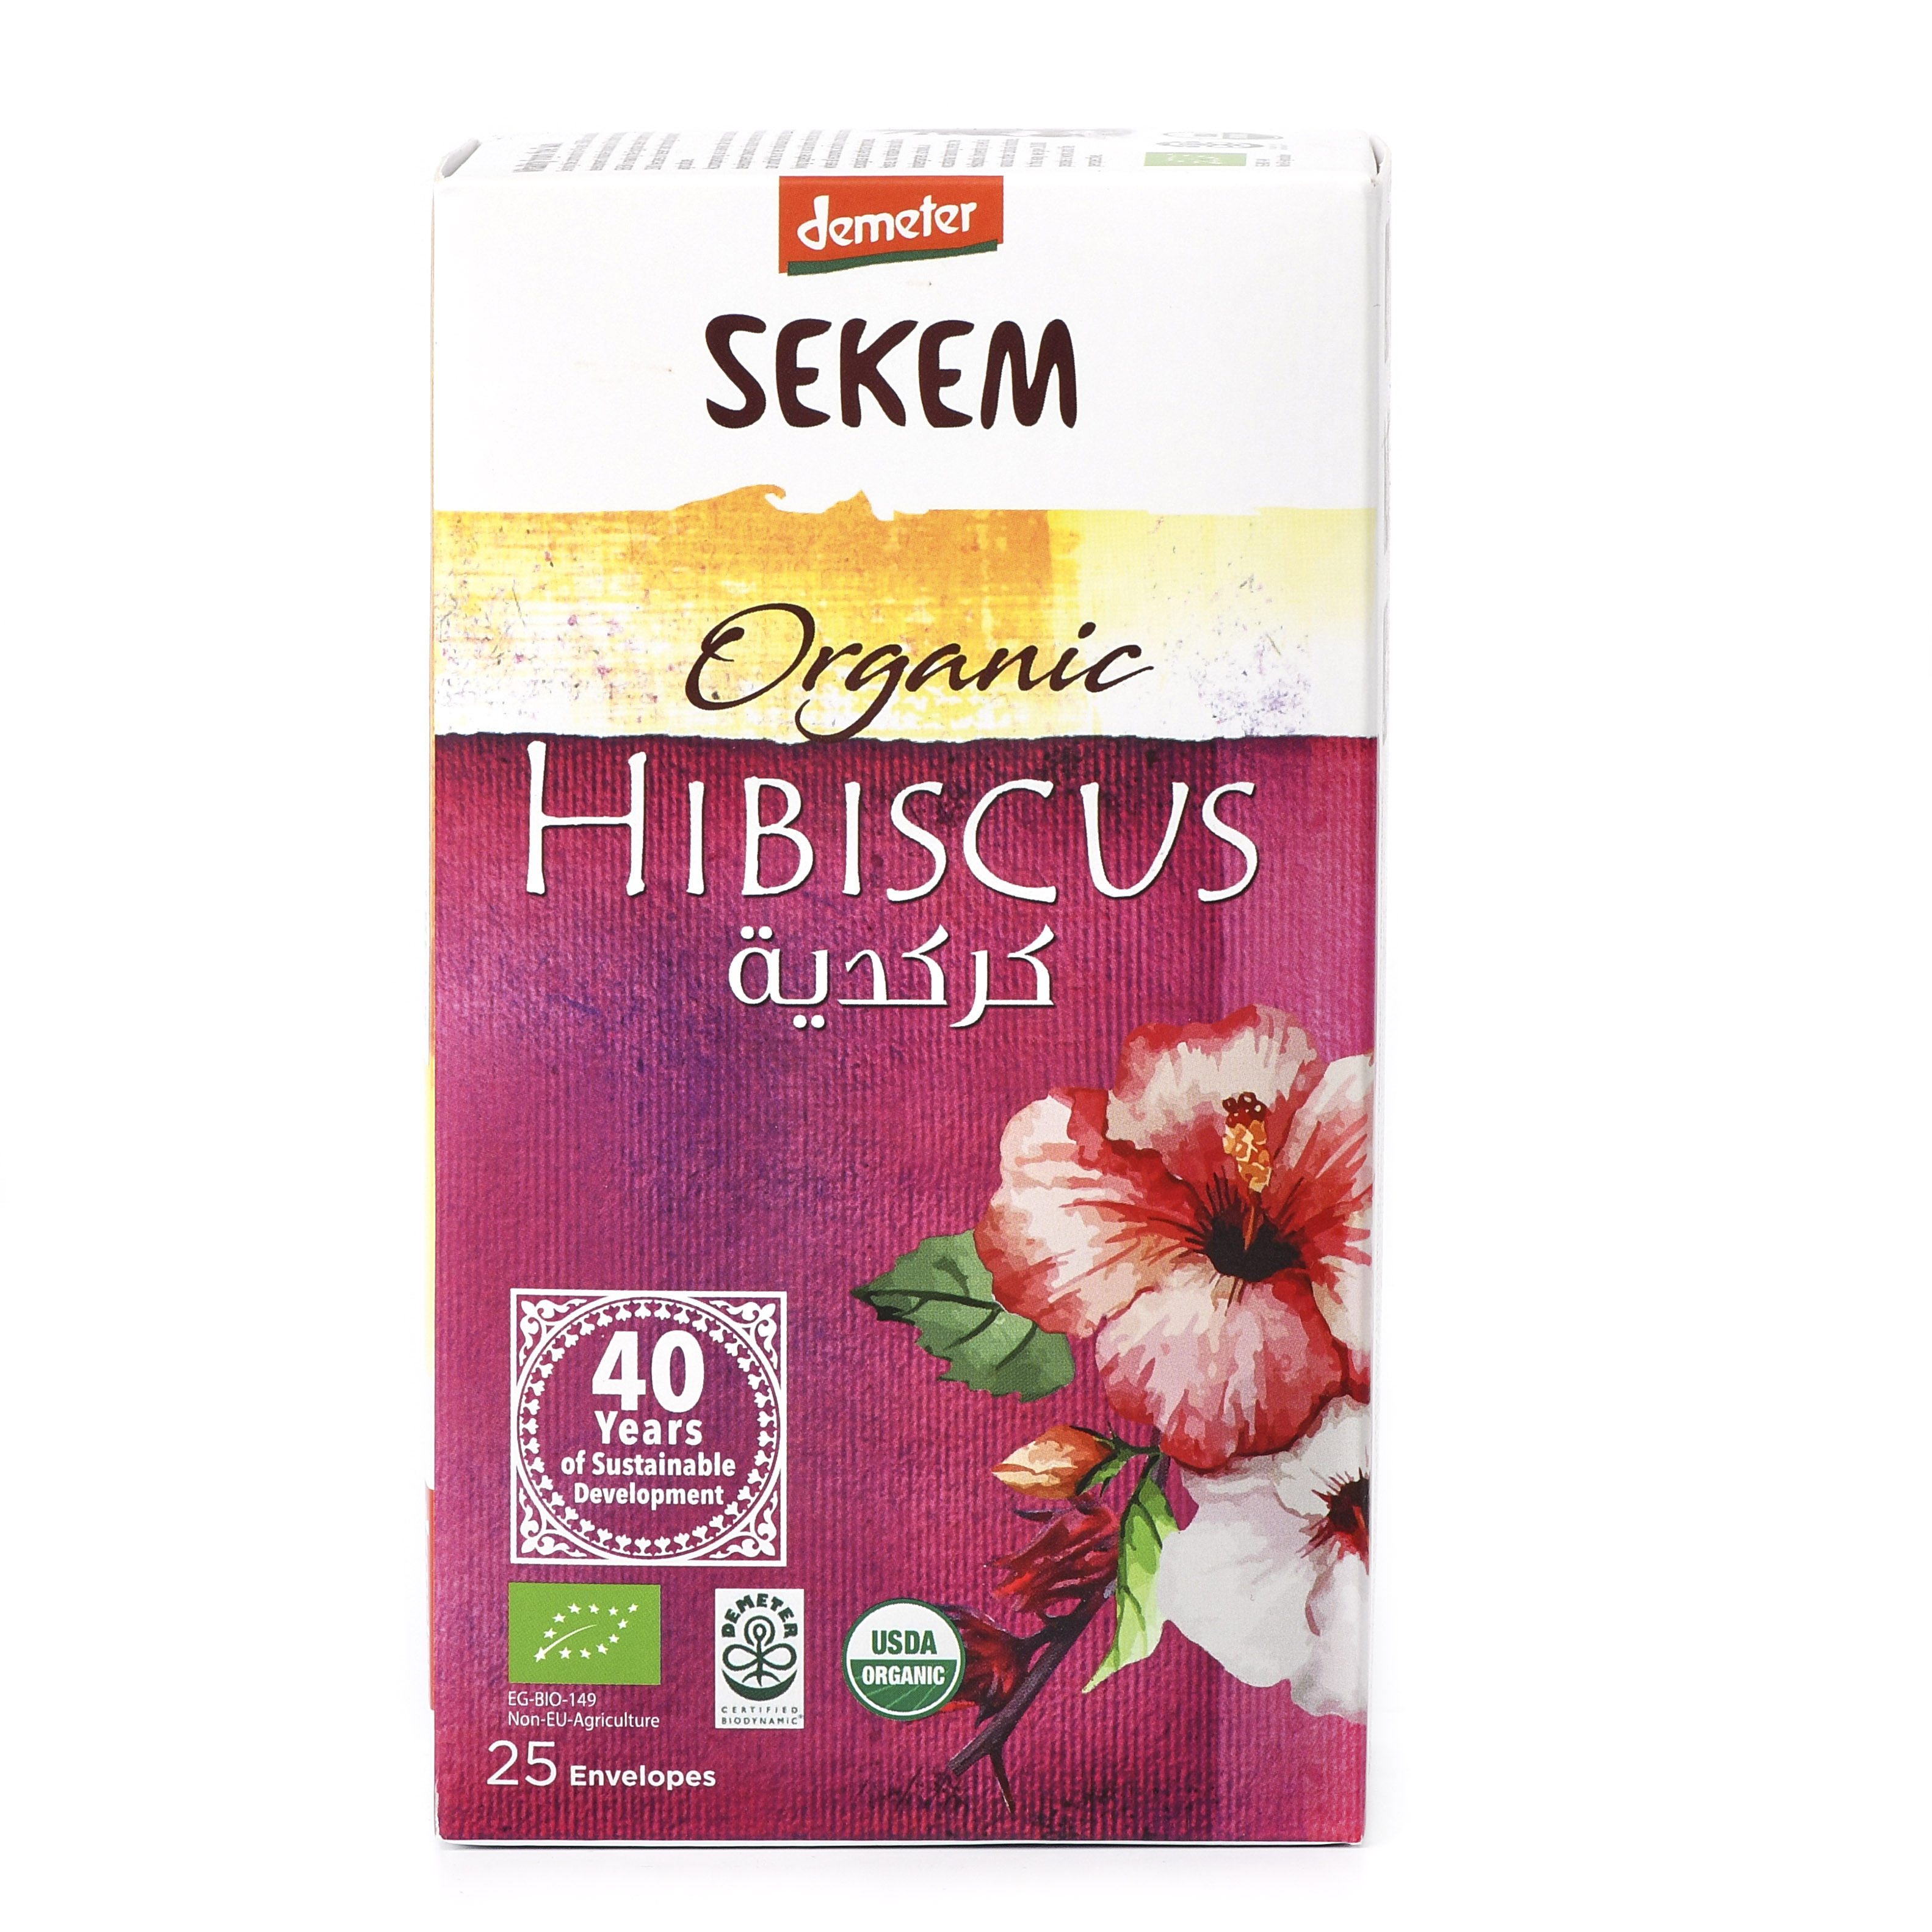 Органический каркаде, чайный напиток SEKEM, Demeter - 50 г